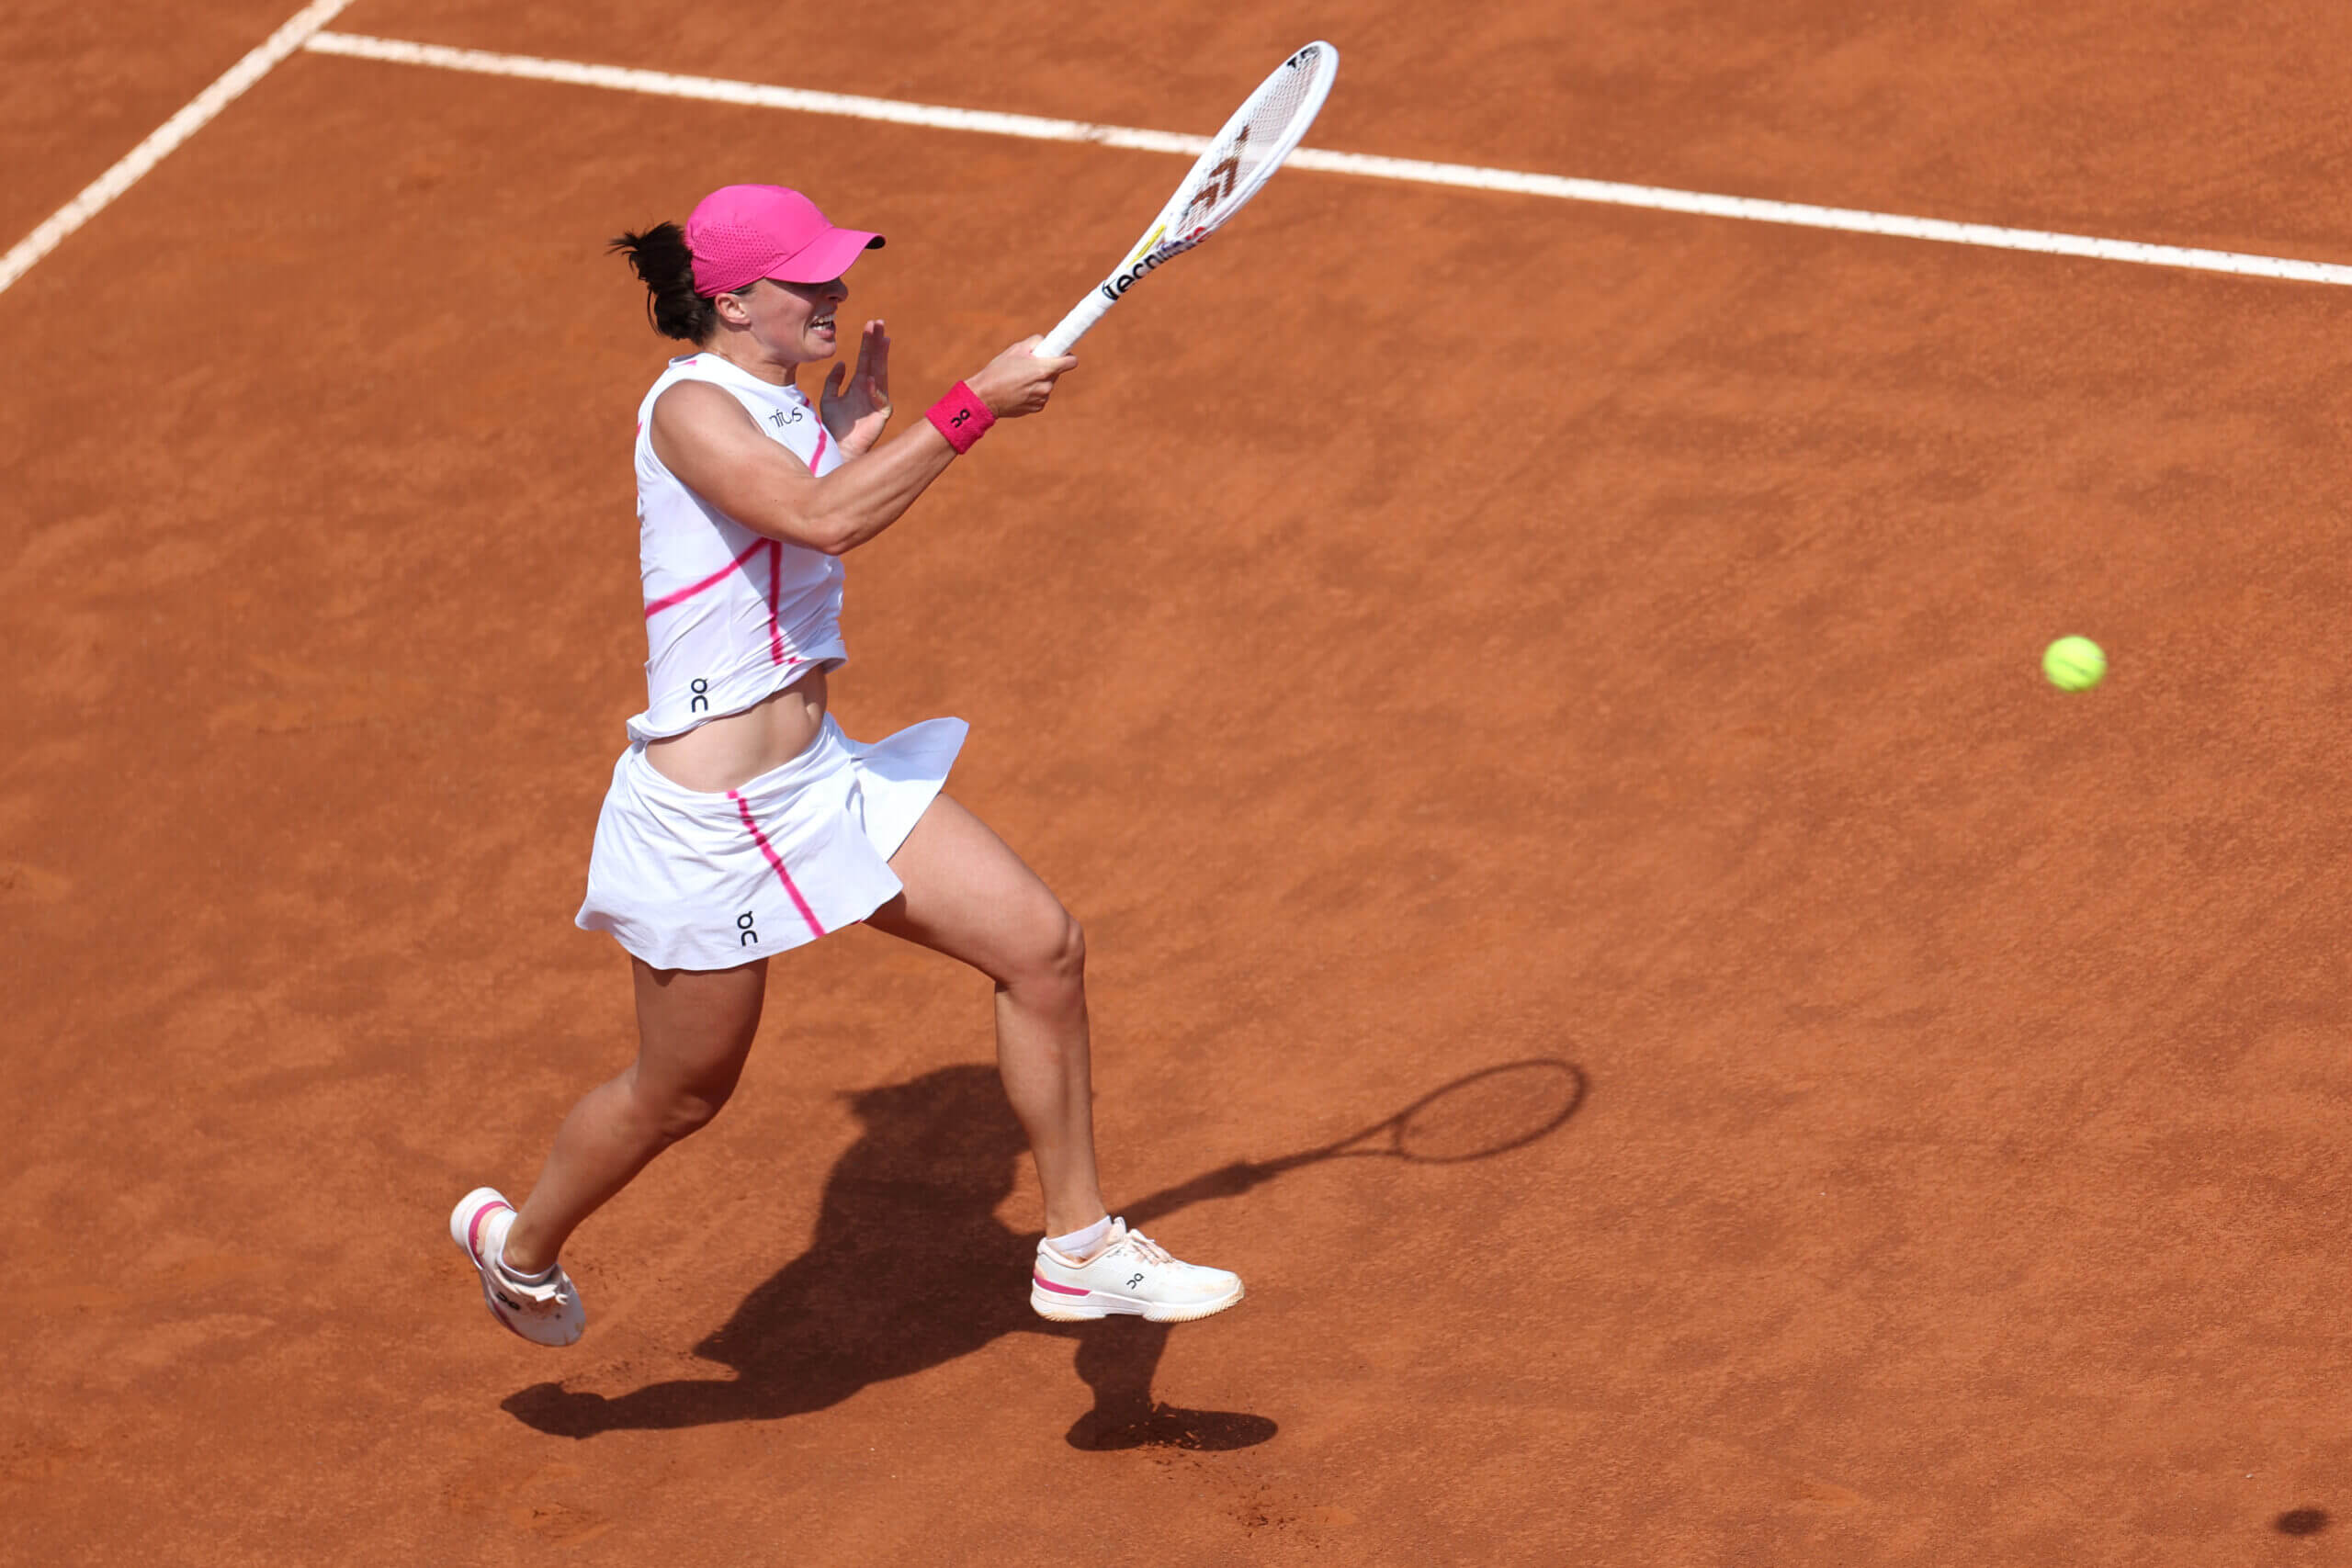 De (tennis)bagels van Iga Swiatek: hoe de nummer 1 van de WTA-wereld haar 6-0 sets bakt